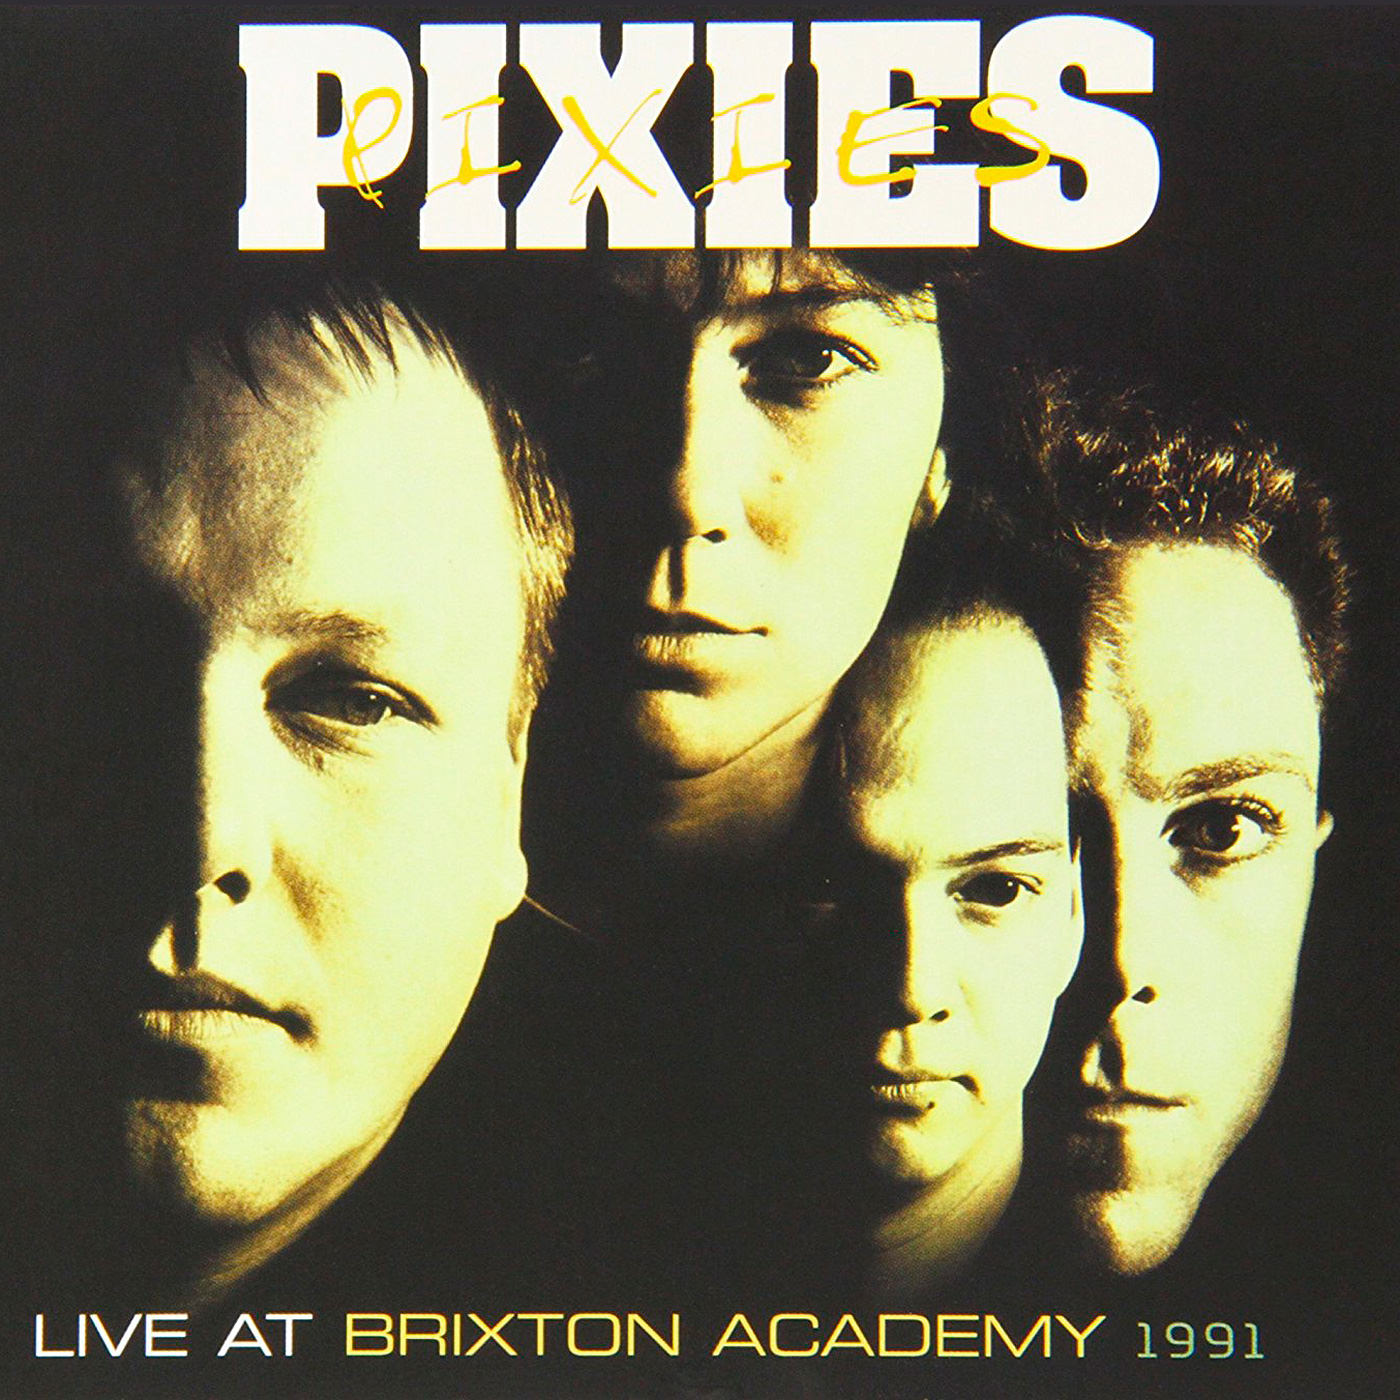 Pixies – Live At The Brixton Academy 1991 (2009) [FLAC 24bit/96kHz]